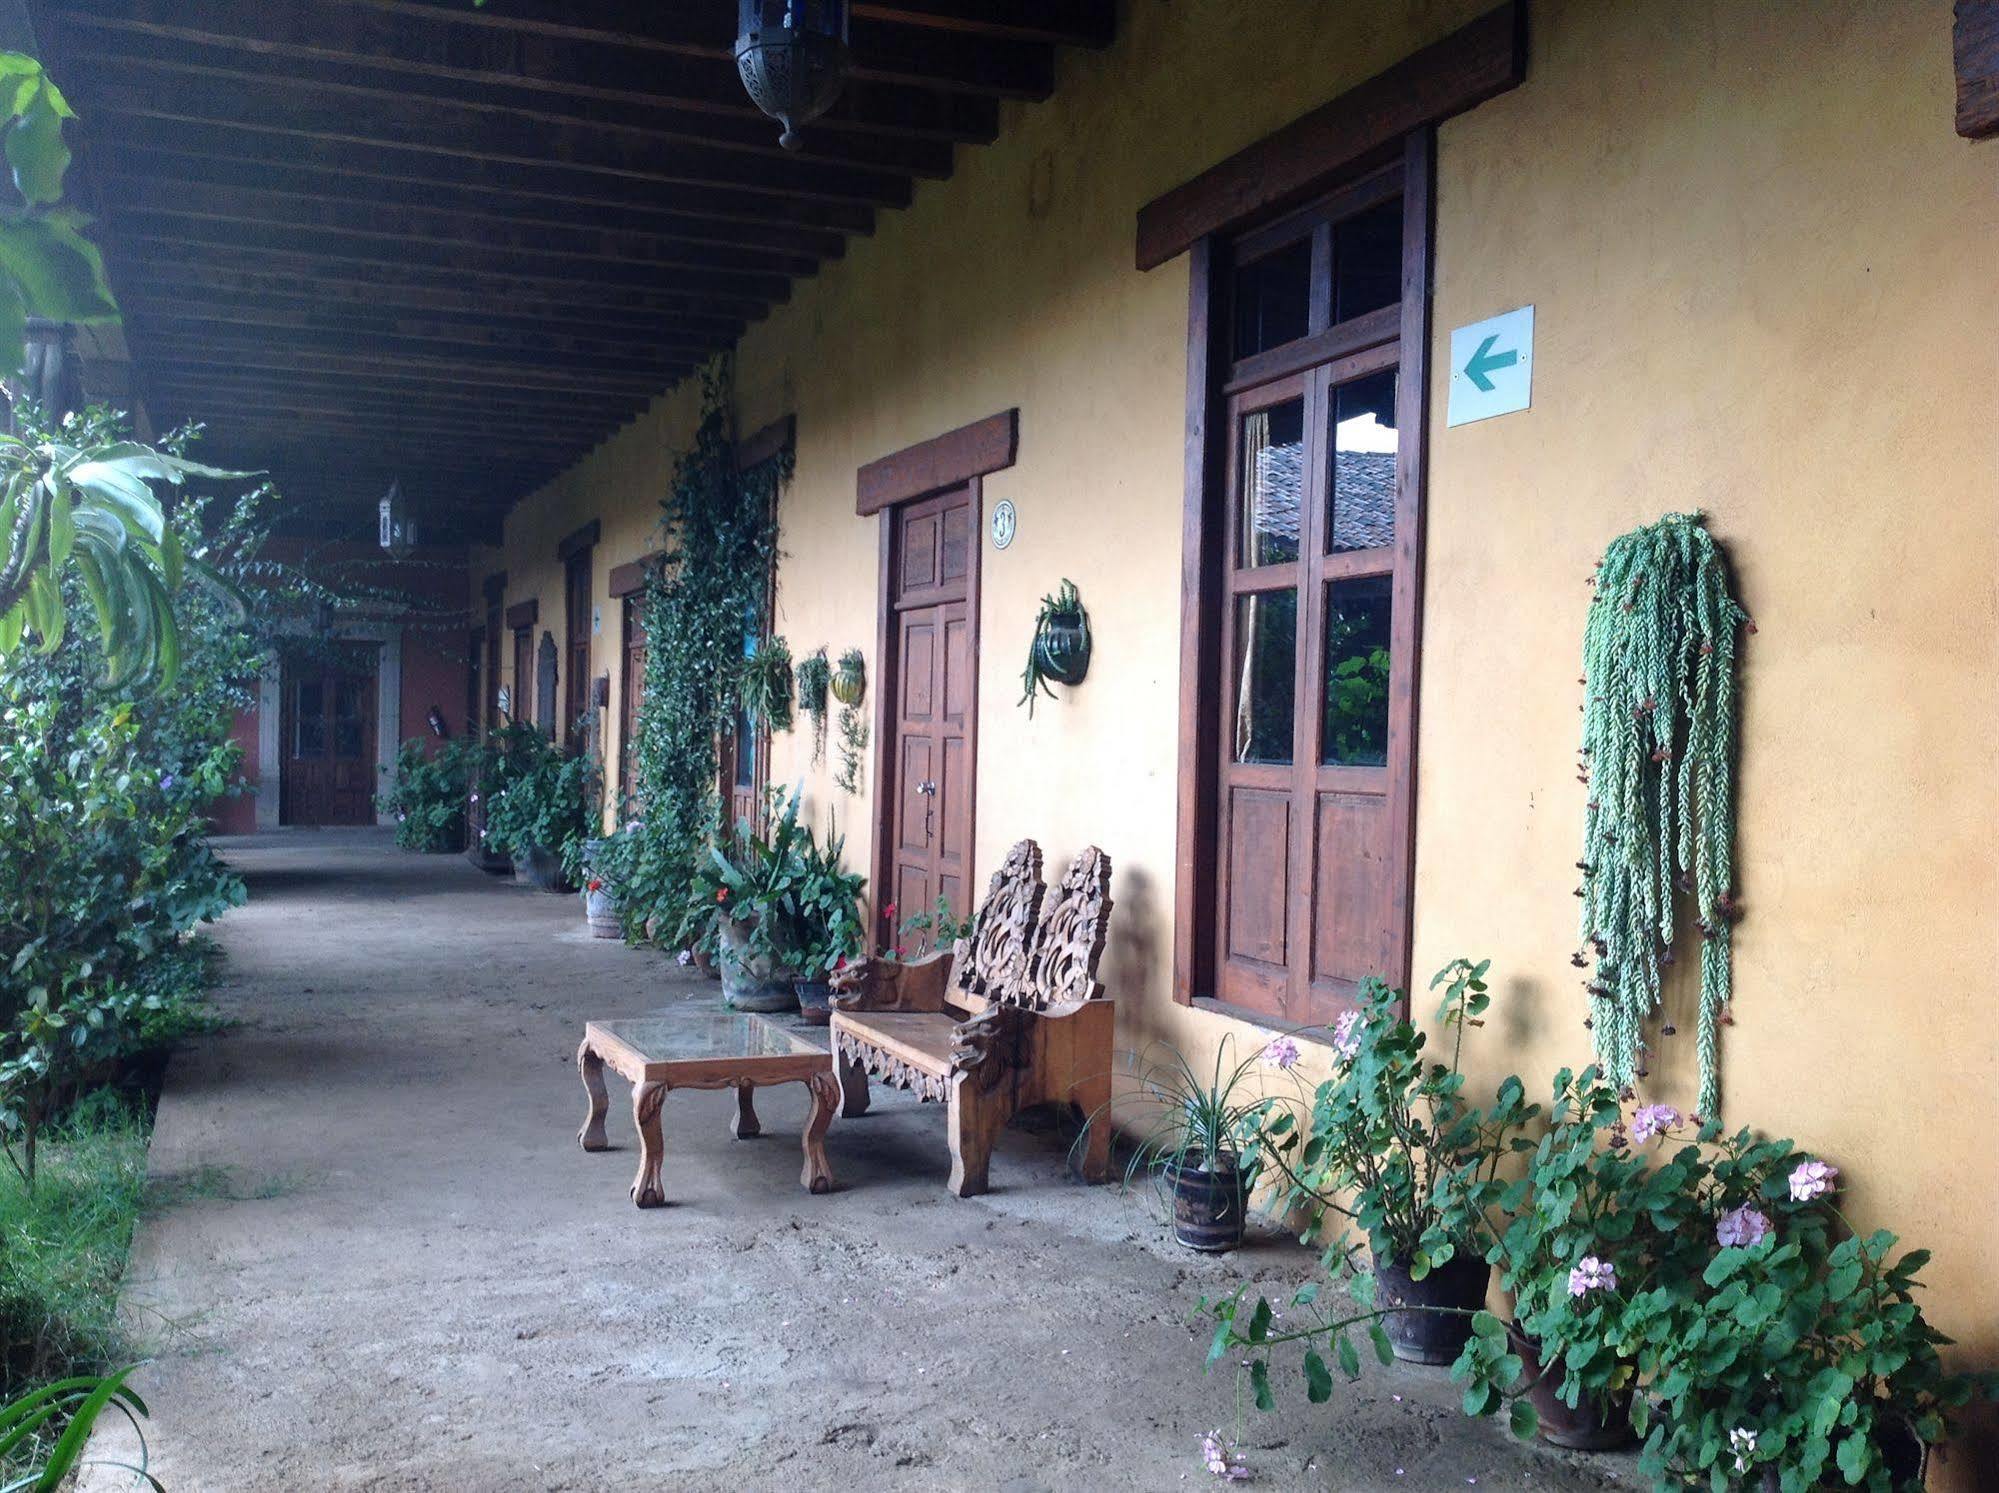 Hôtel Meson de San Antonio à Pátzcuaro Extérieur photo